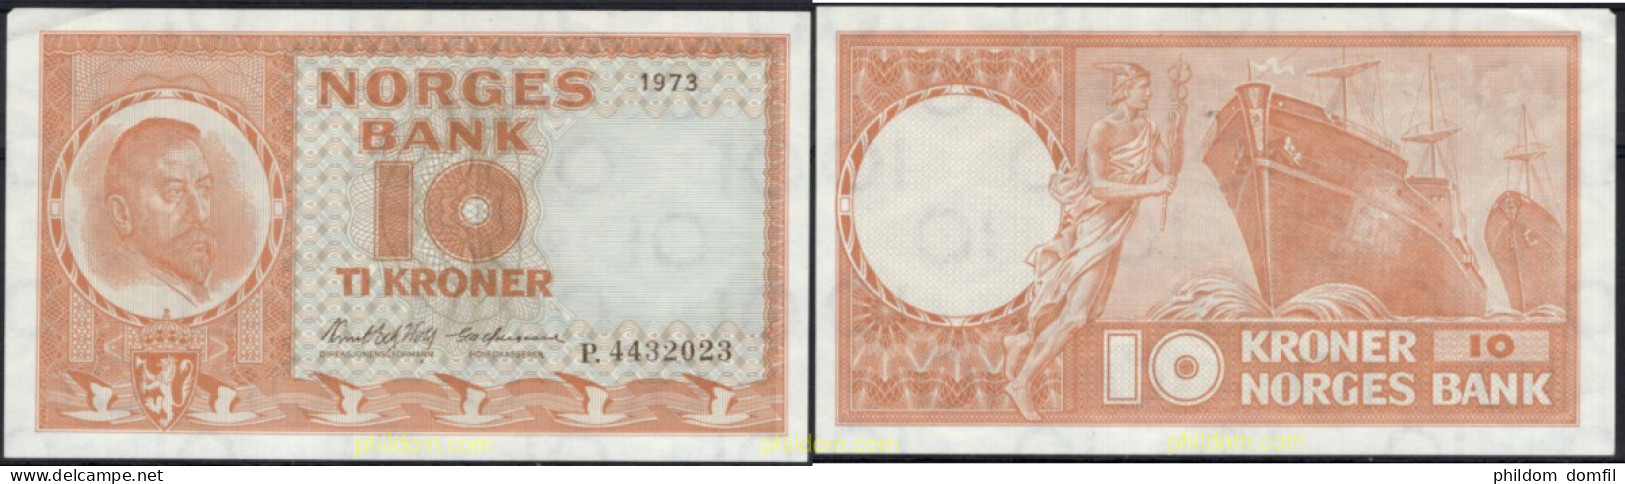 8536 NORUEGA 1973 NORWAY NORGES BANK 1973 10 KRONER - Noorwegen